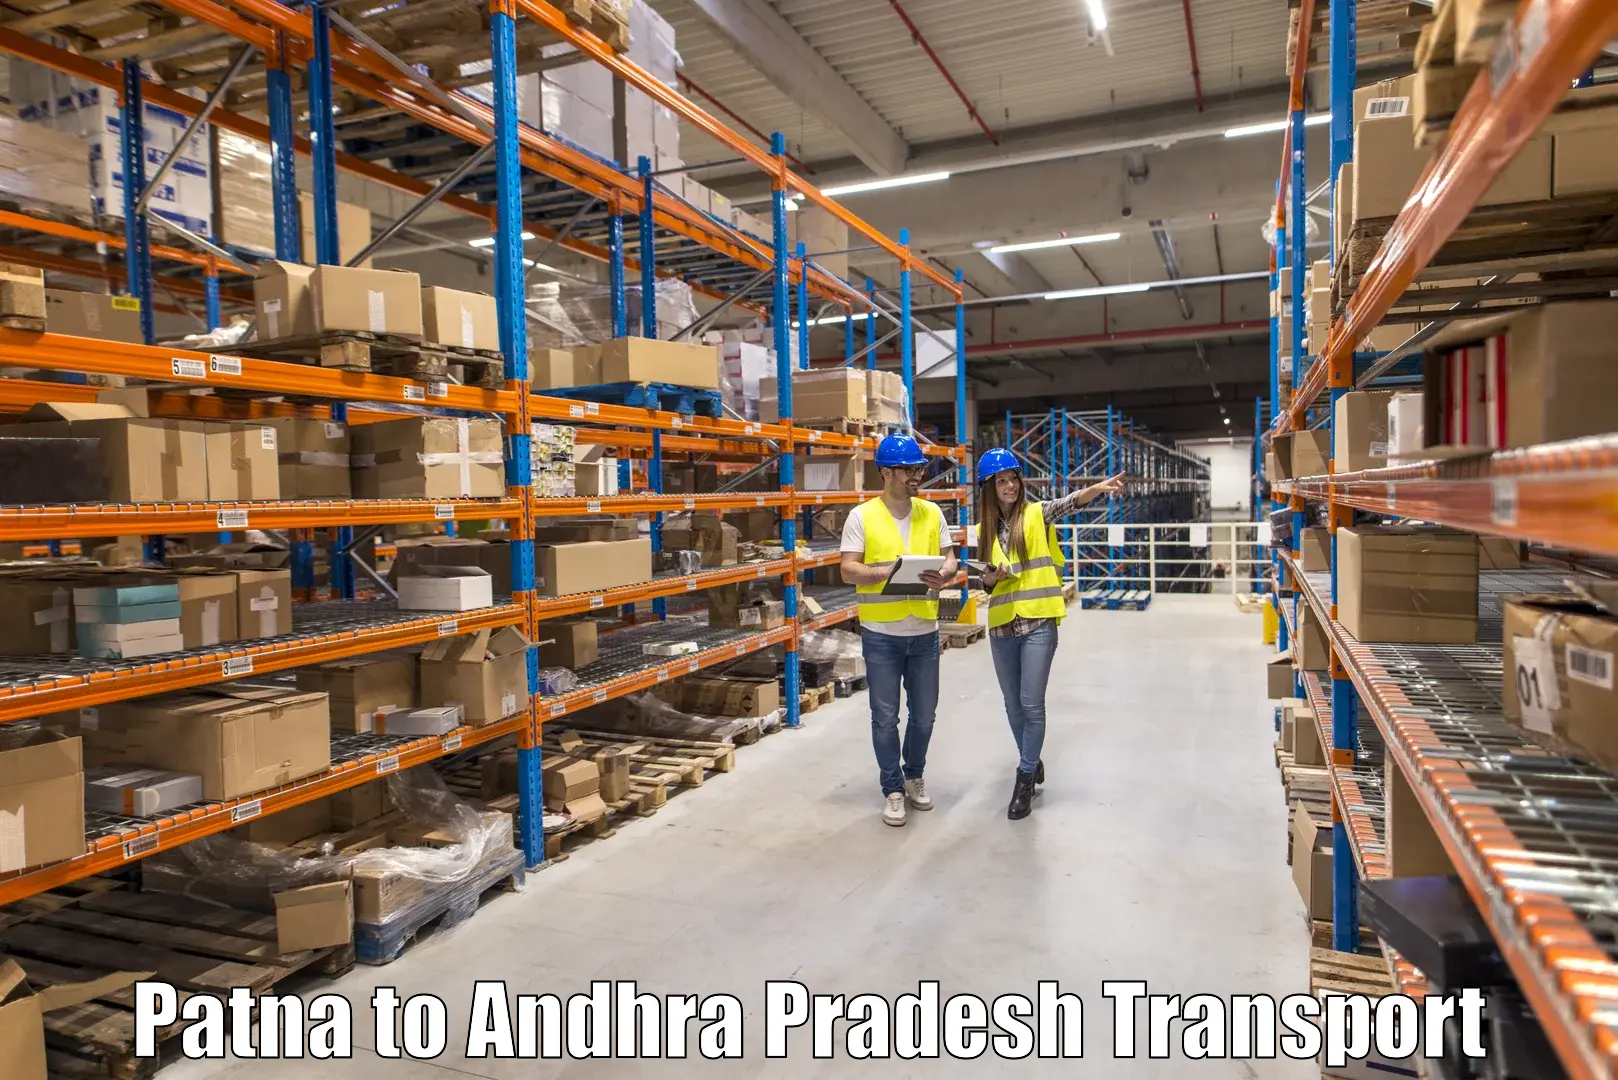 Shipping partner Patna to Mudigubba